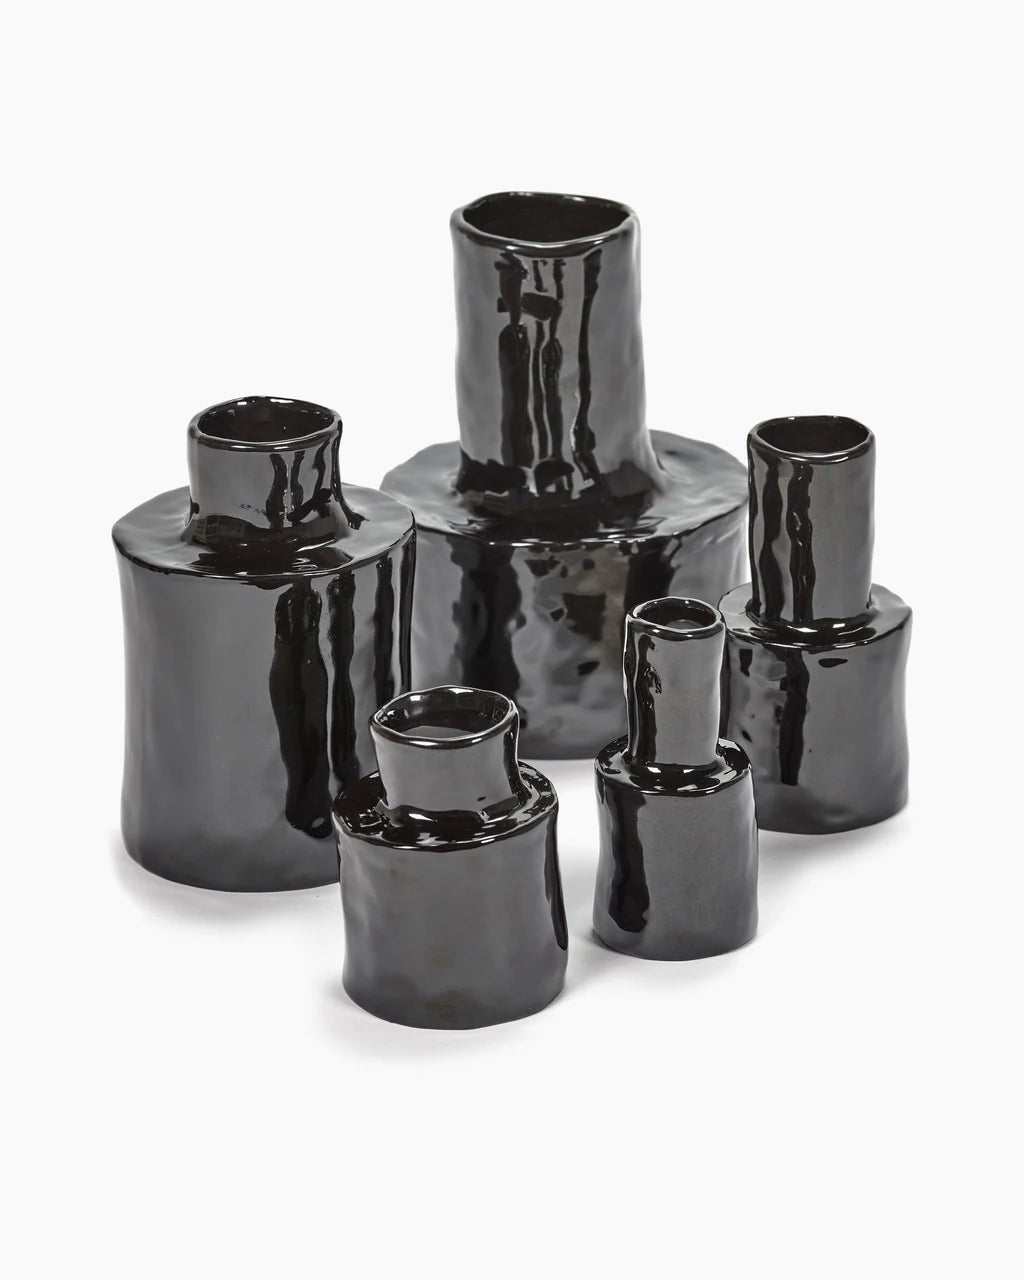 Petit vase noir Héléna by " Marie Michielssen"